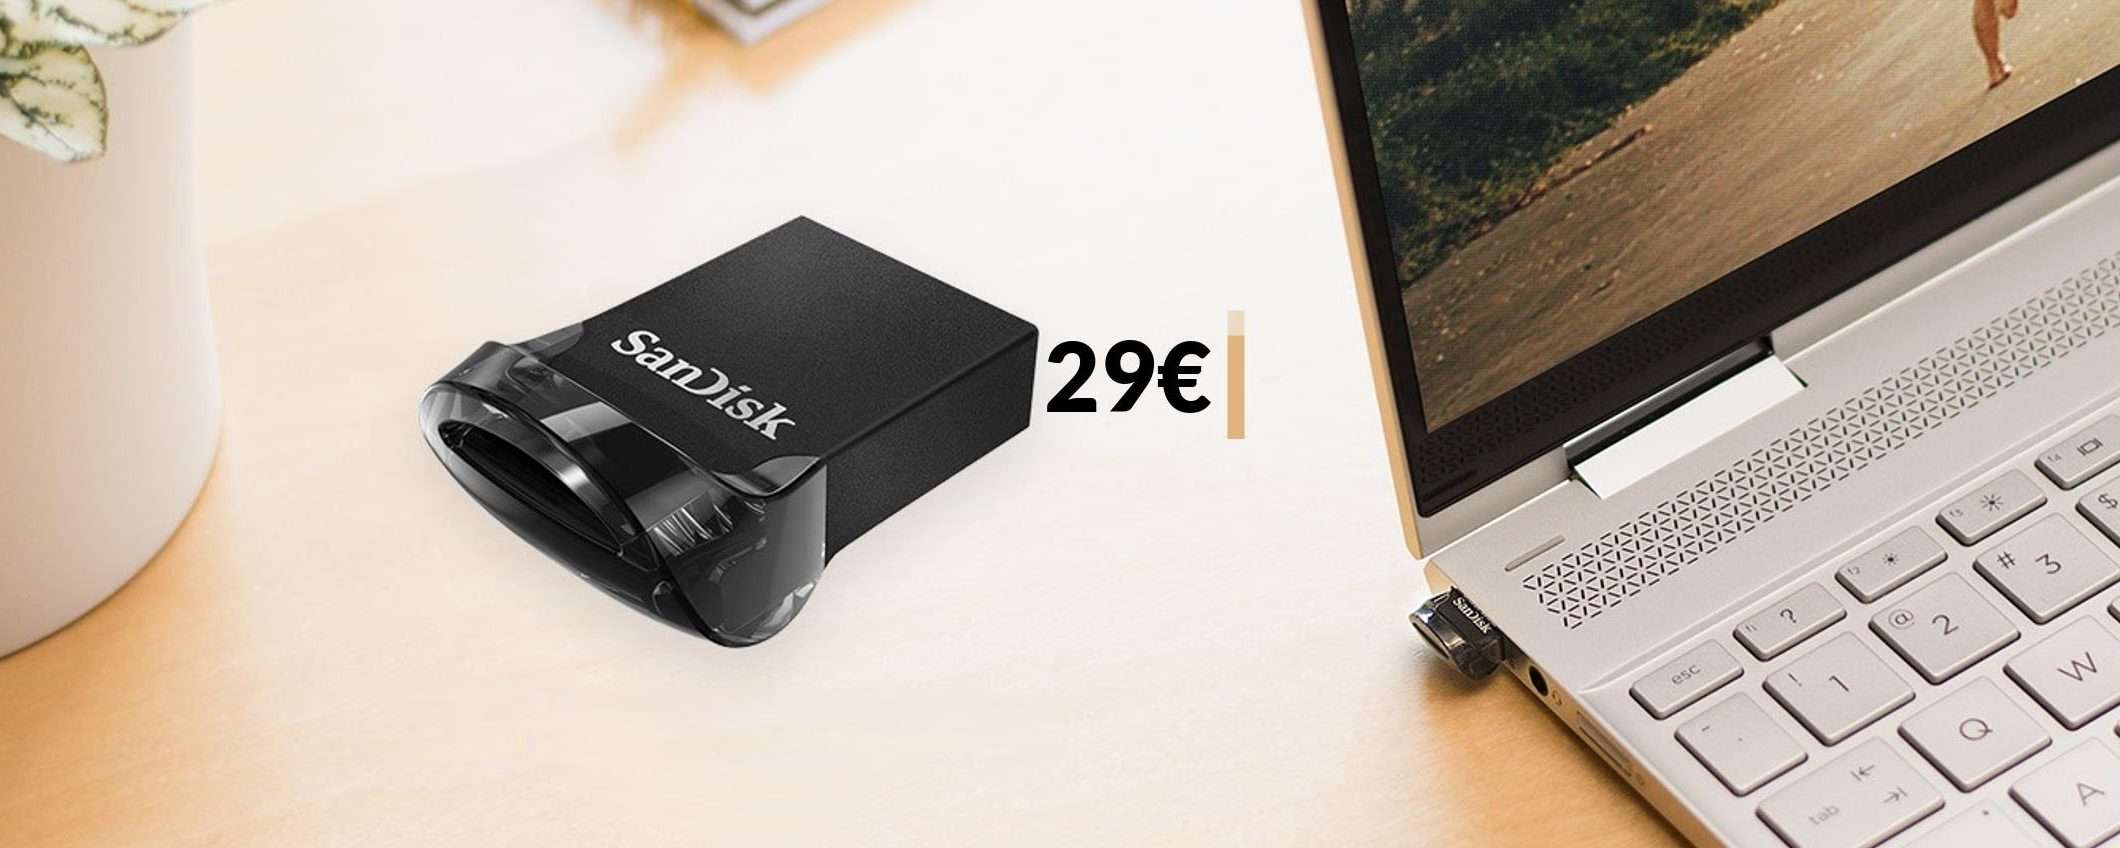 Questa MICRO chiavetta USB da 256GB è già tua con appena 29€